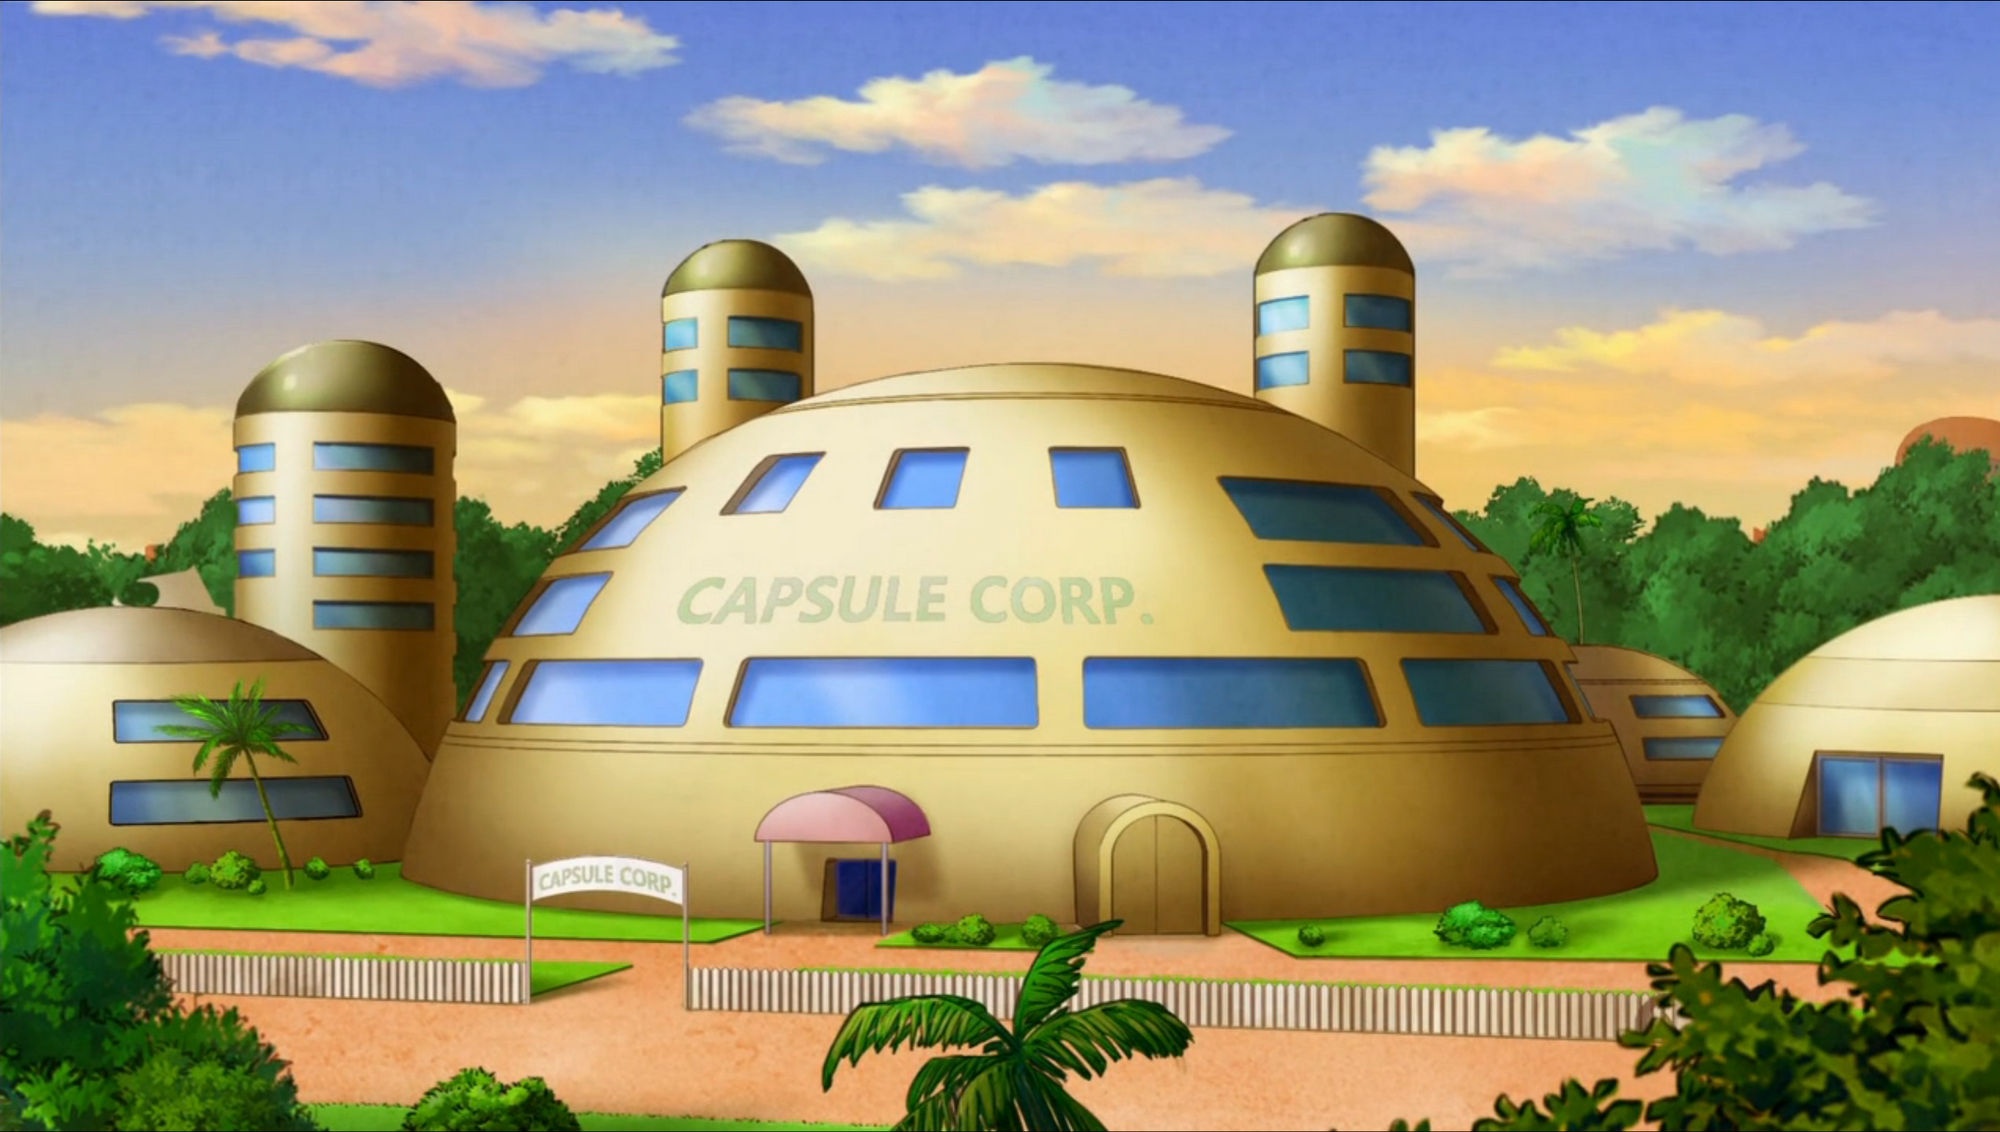 Capsule Corporation				Fan Feed